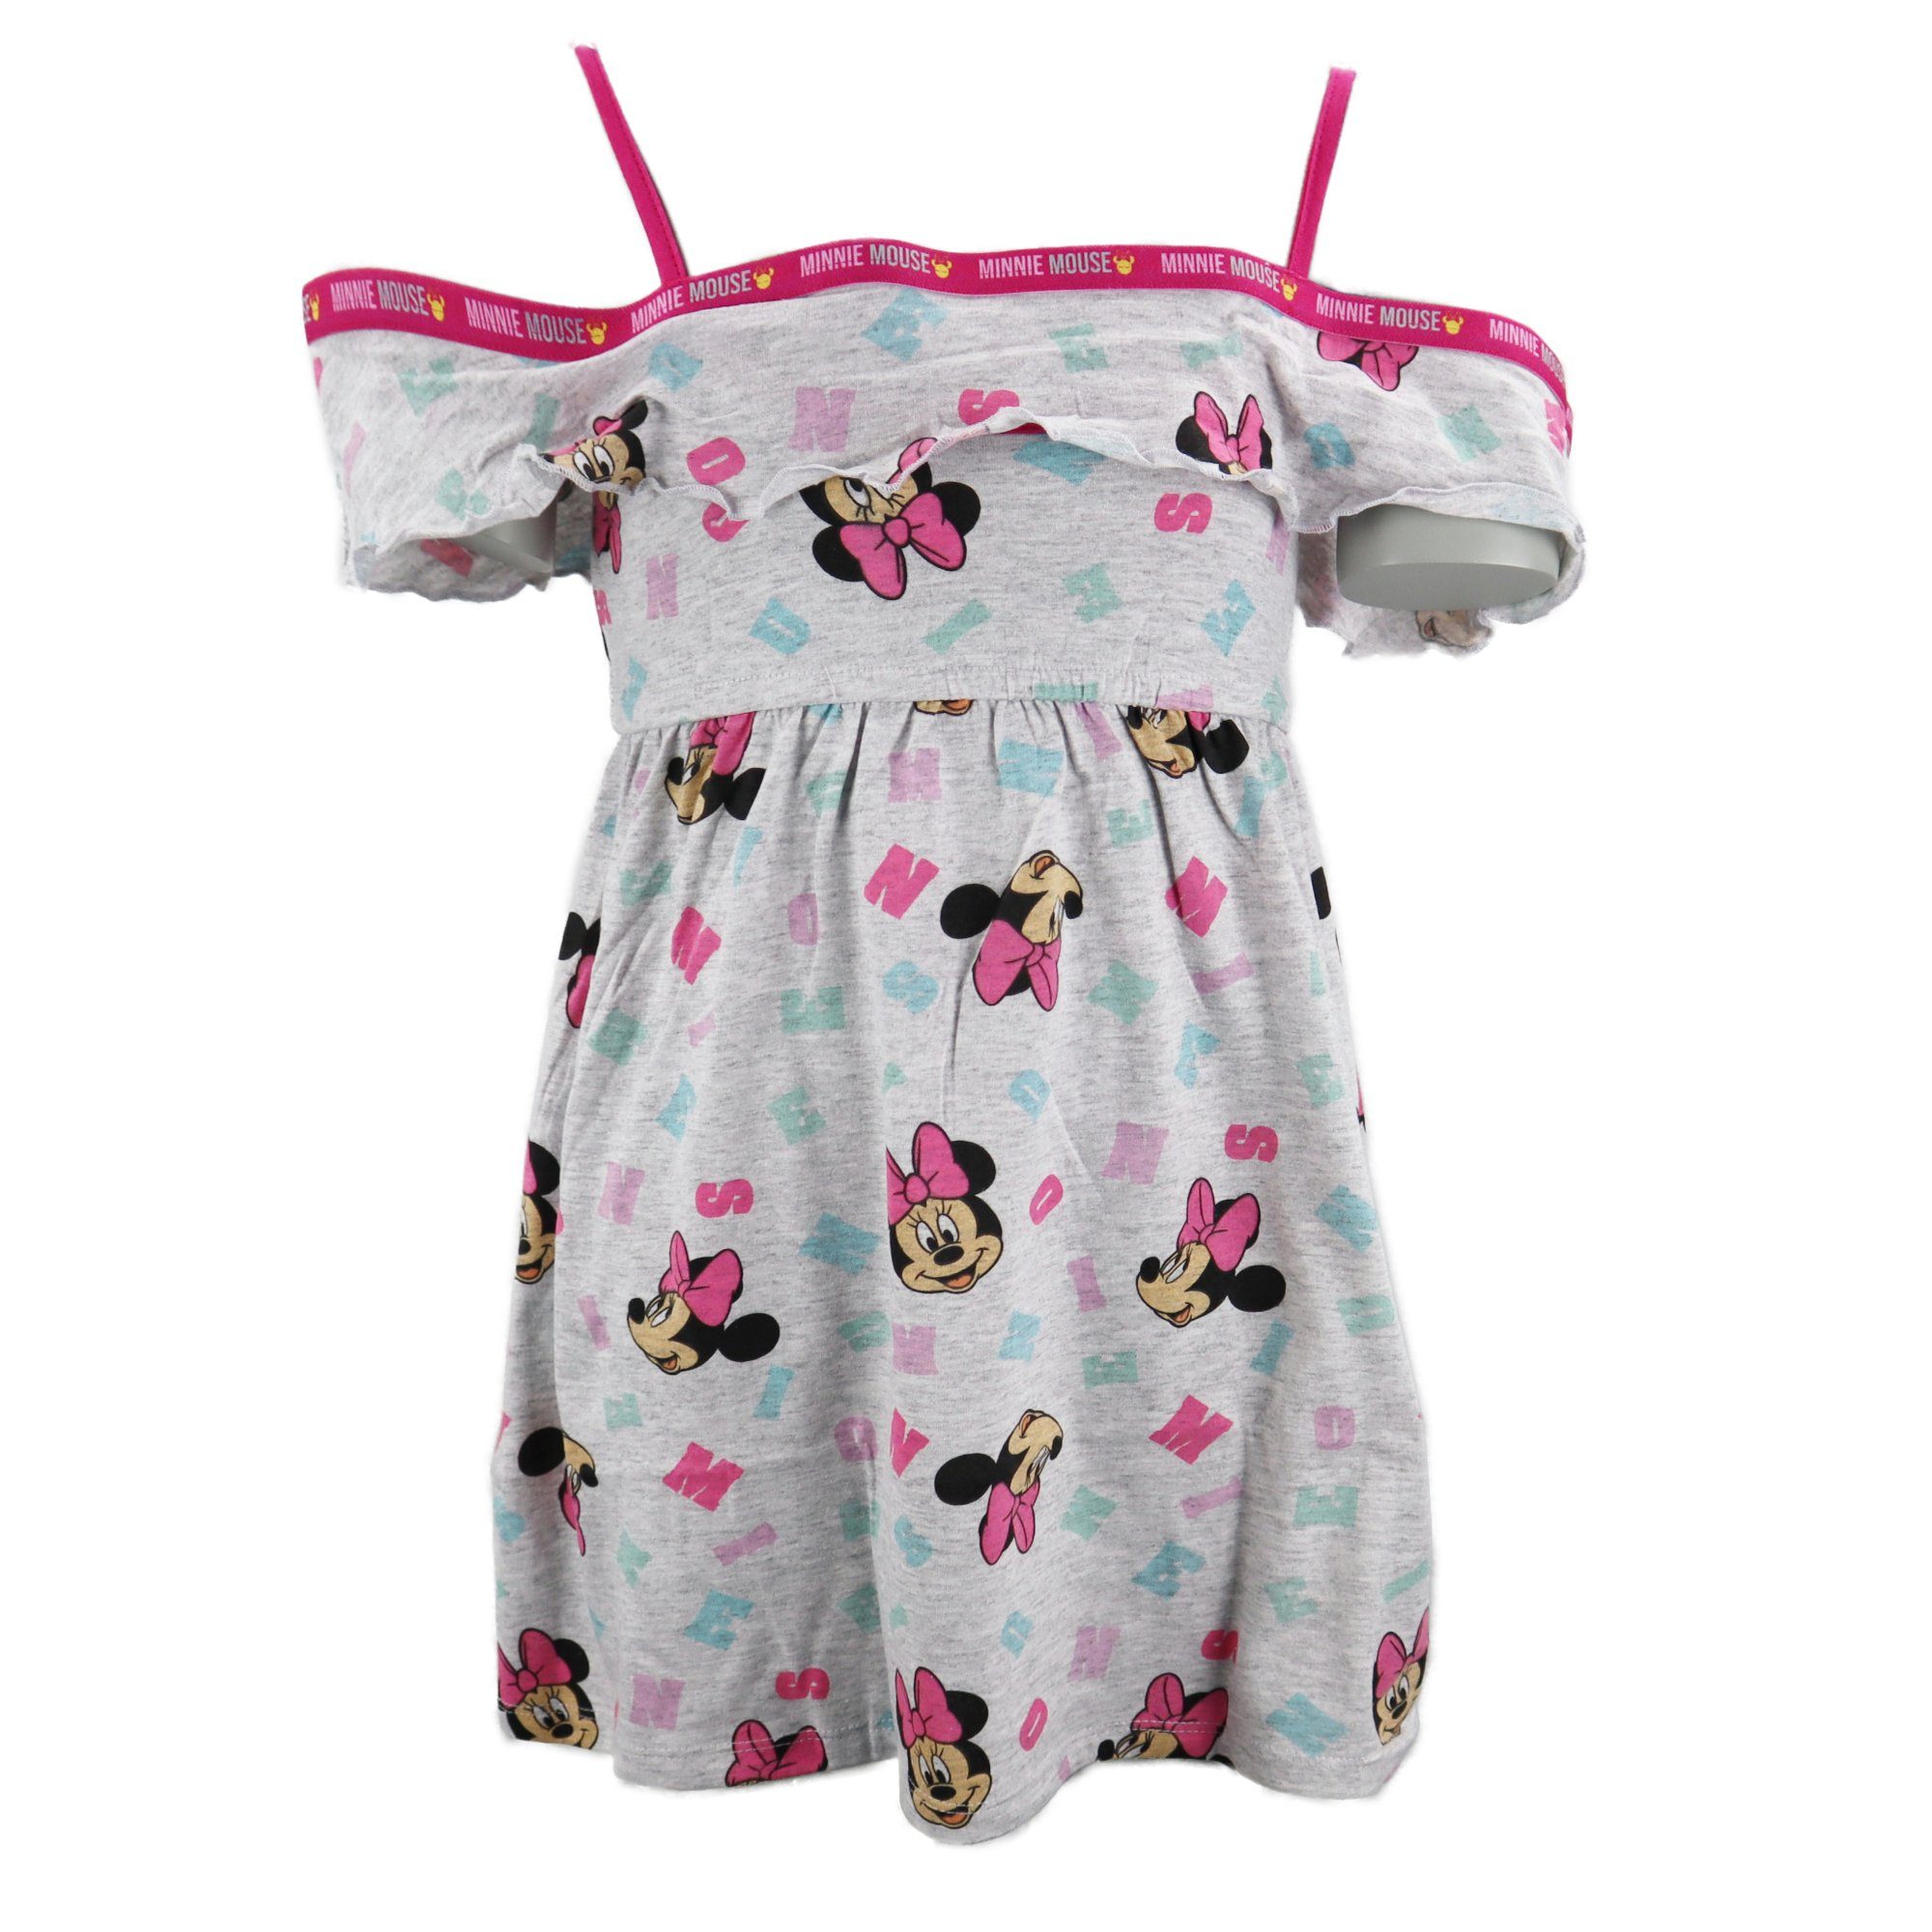 Disney Minnie Mouse Sommerkleid Disney 104 Mädchen Minnie Kinder kurzarm Grau Kleid Maus bis 134 Gr.